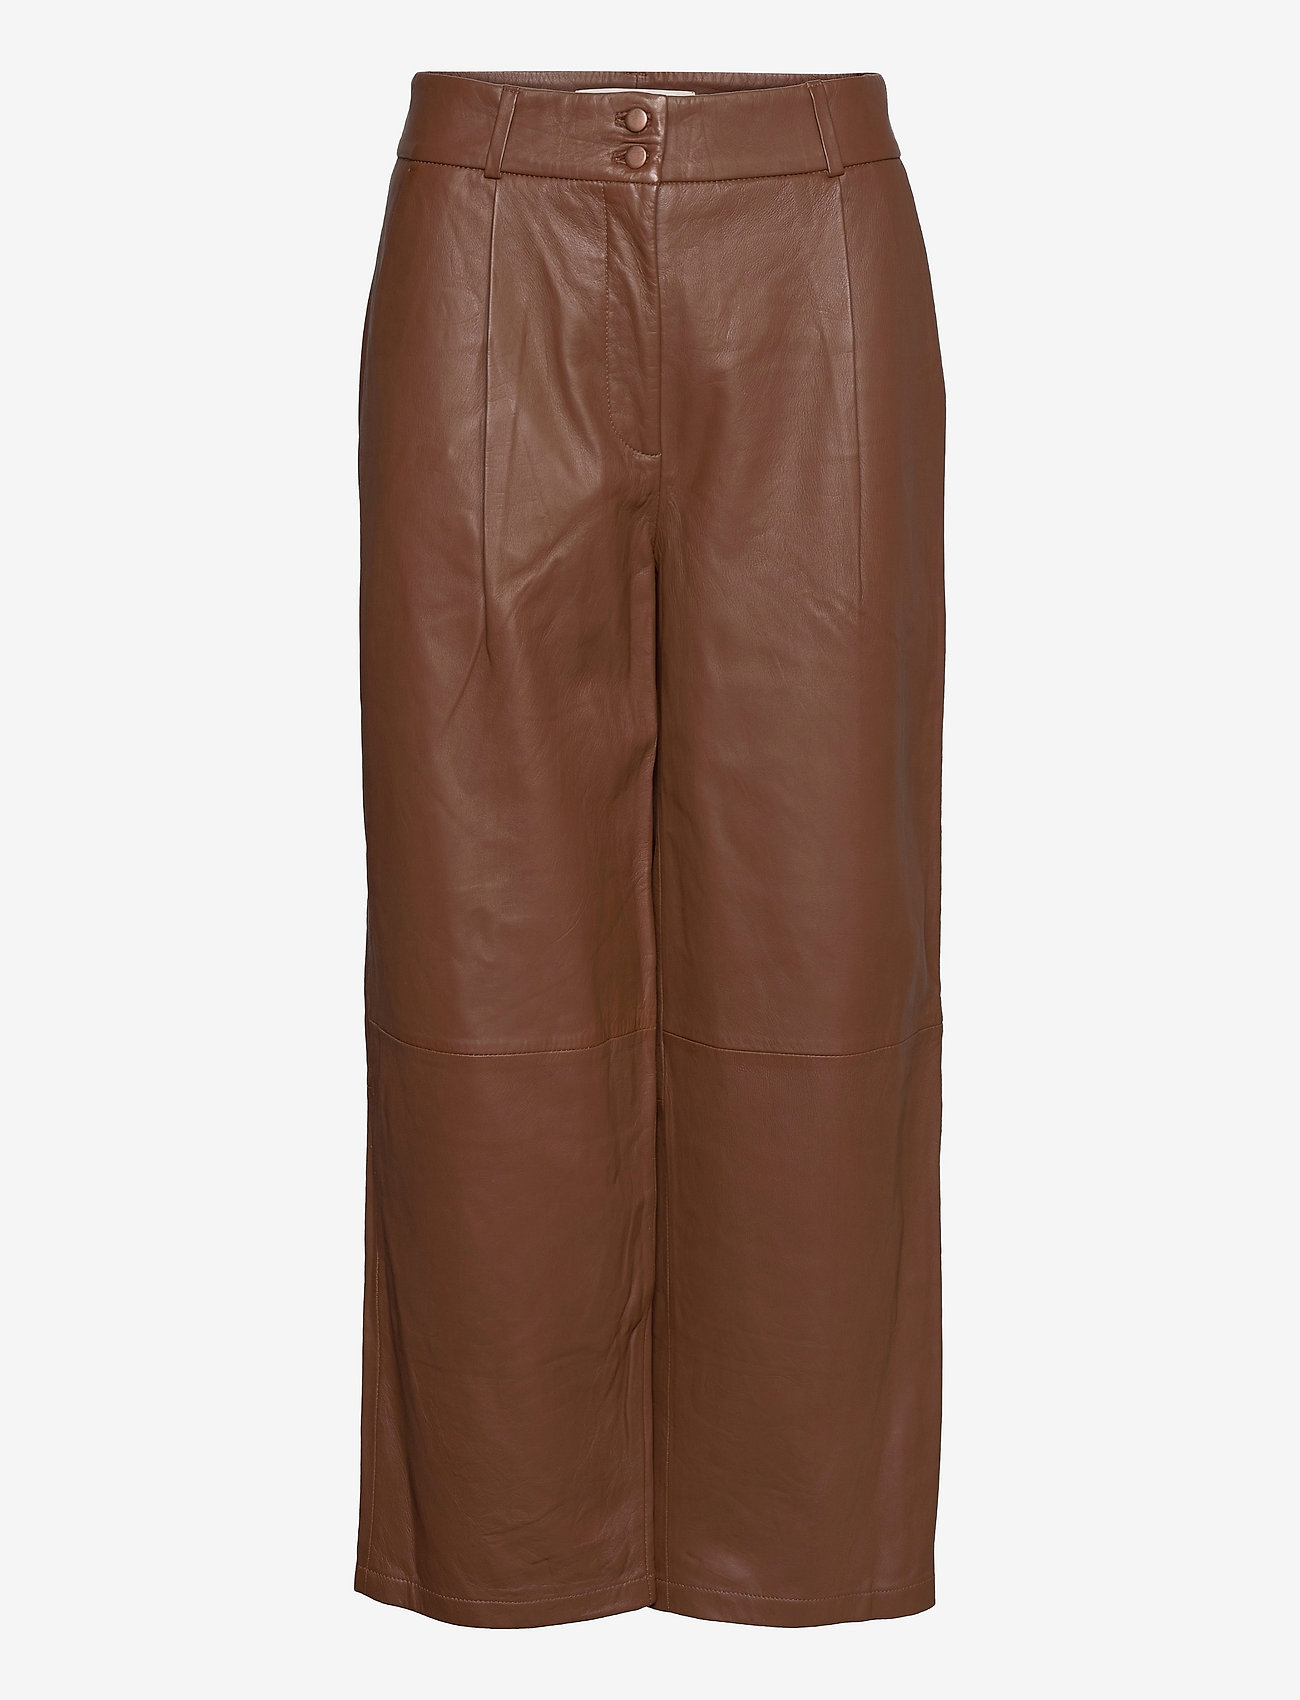 Cognac Faux Leather Pants - High Waisted Pants - Pleather Pants - Lulus